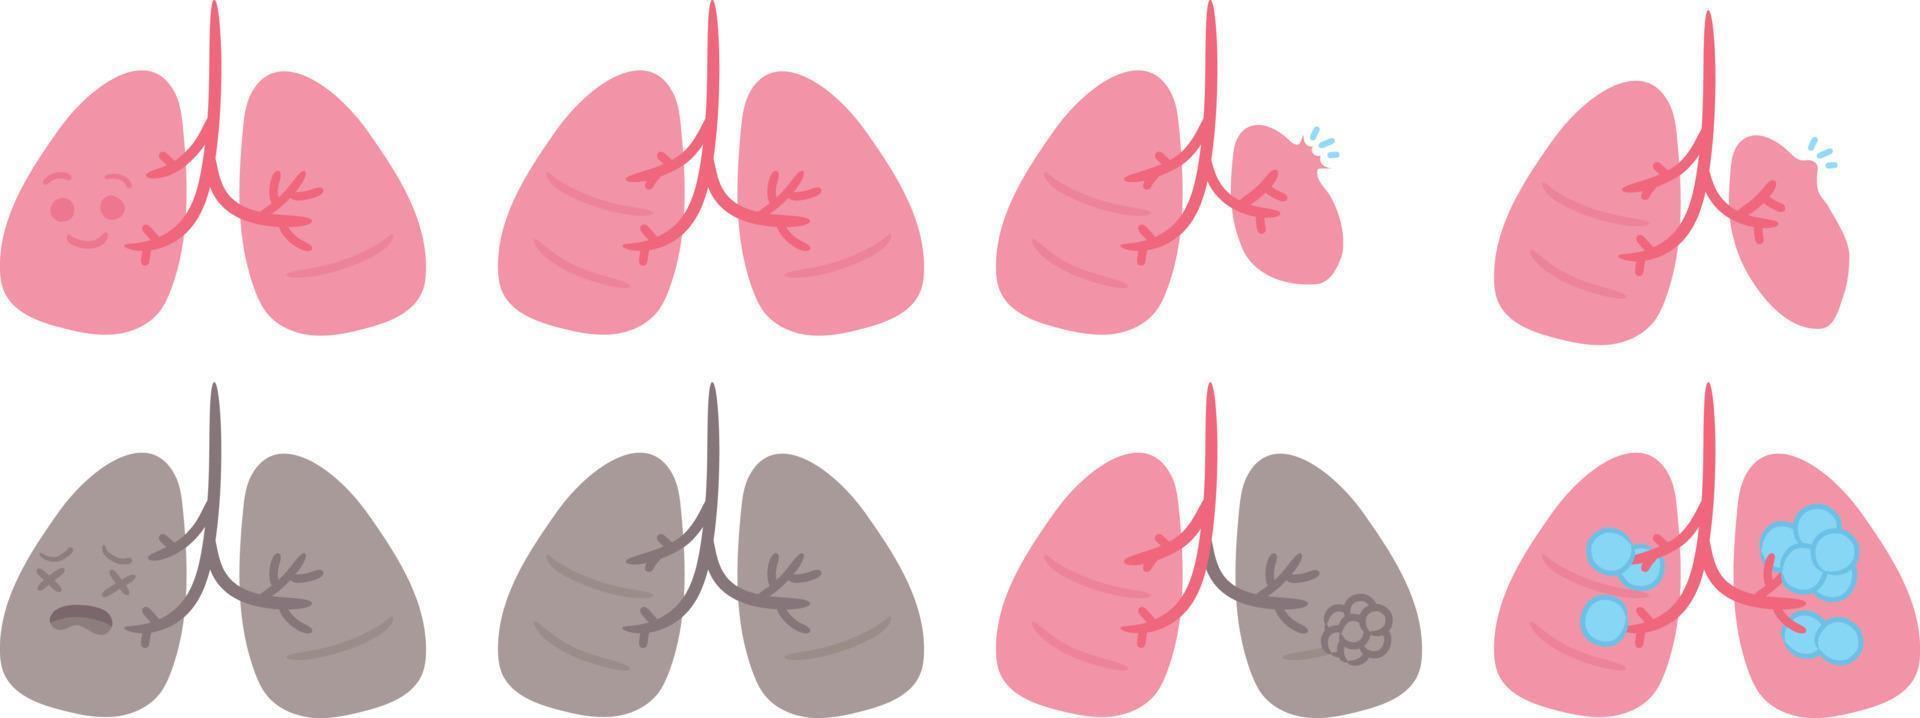 linda humano Organo pulmón enfermedad médico anatomía dibujos animados personaje vector